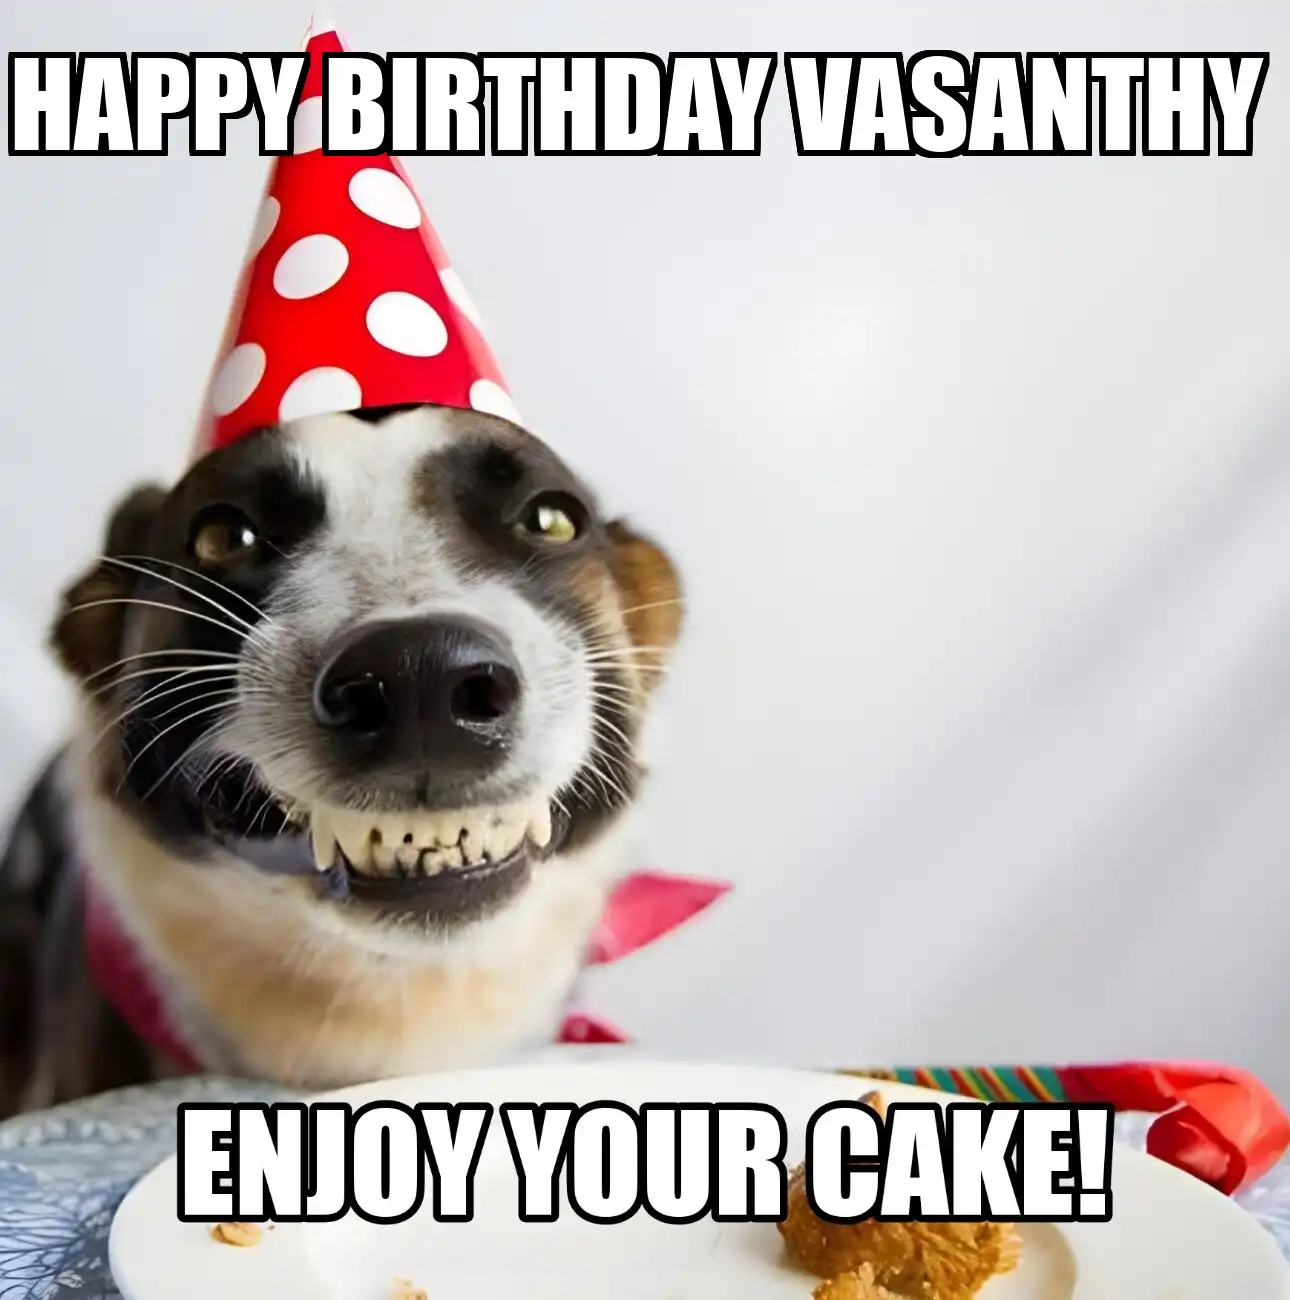 Happy Birthday Vasanthy Enjoy Your Cake Dog Meme